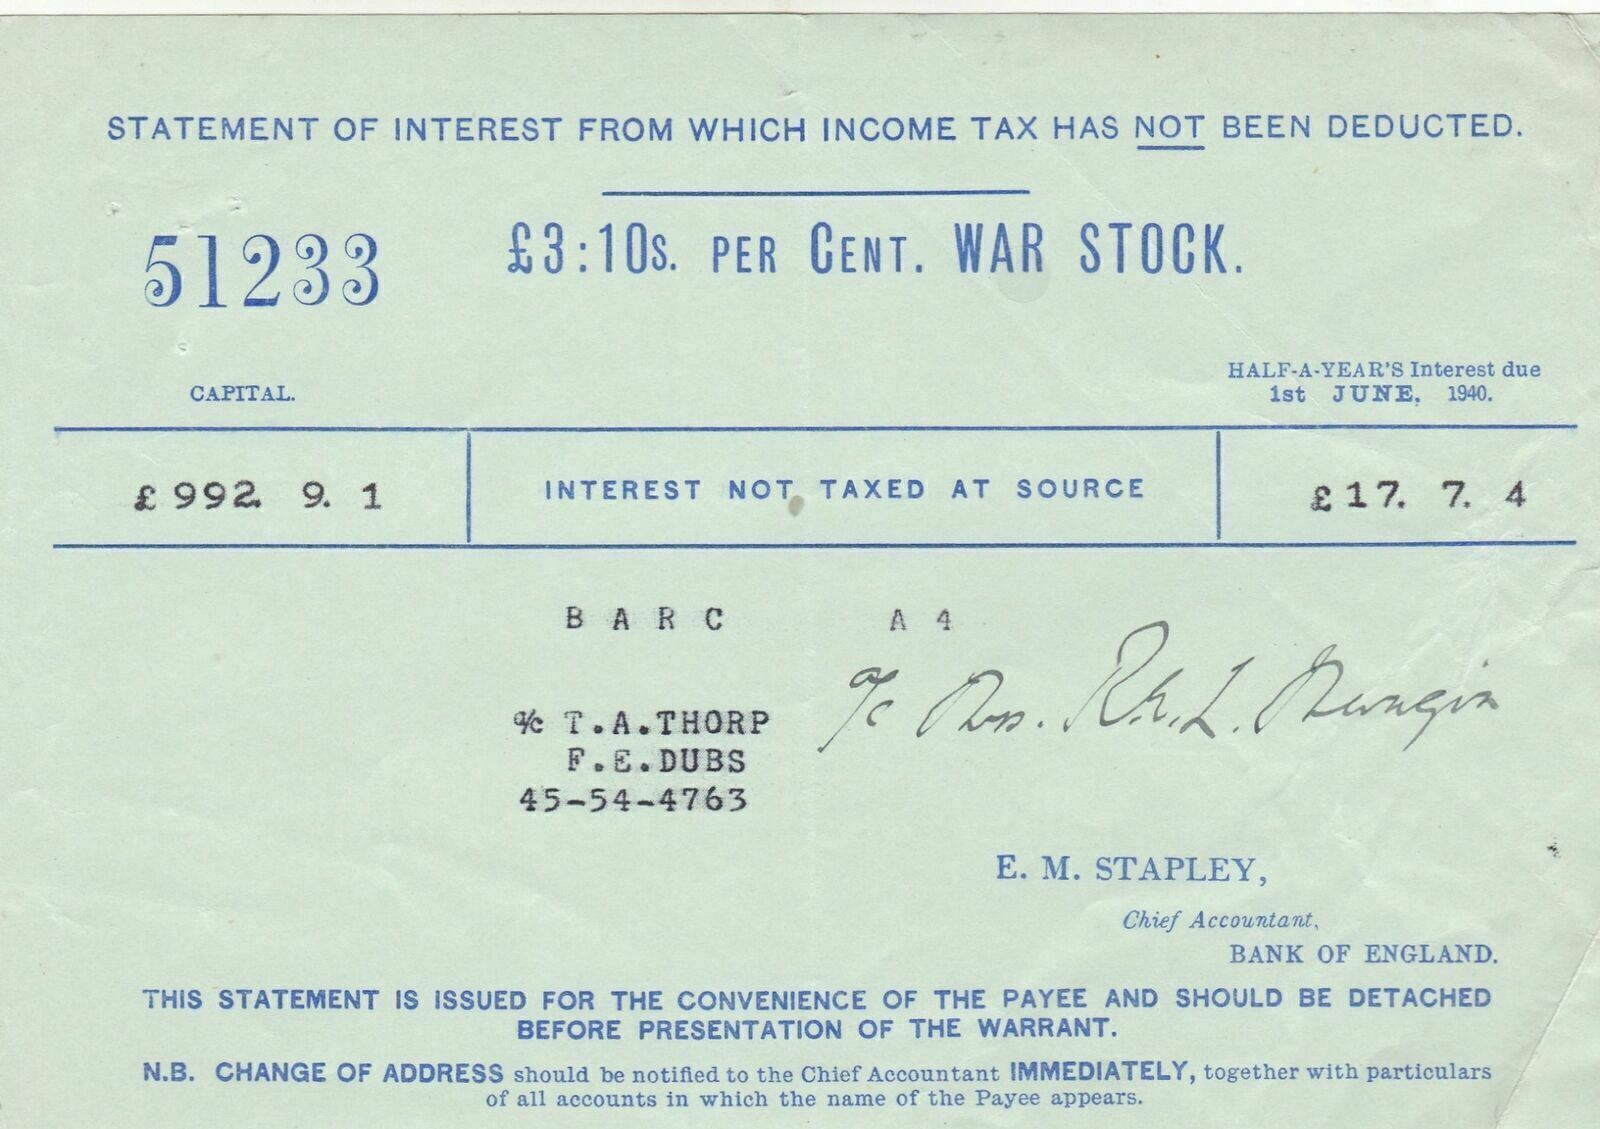 £3:10s per Cent WAR STOCK 1940 Half YrsInterest,Tax Not Deducted Voucher Rf48738